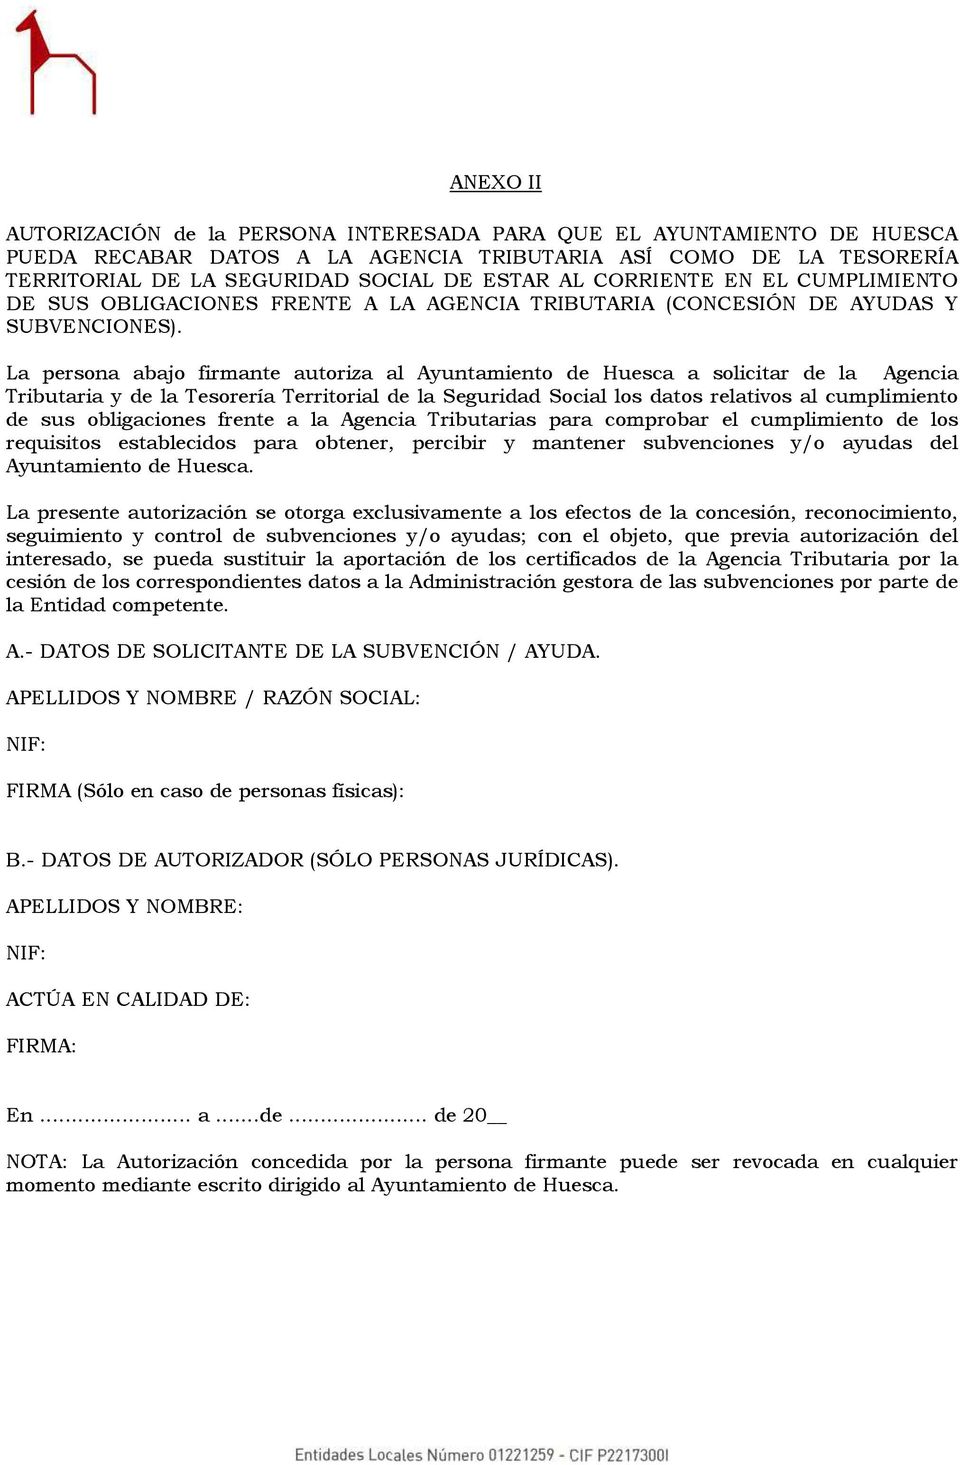 La persona abajo firmante autoriza al Ayuntamiento de Huesca a solicitar de la Agencia Tributaria y de la Tesorería Territorial de la Seguridad Social los datos relativos al cumplimiento de sus